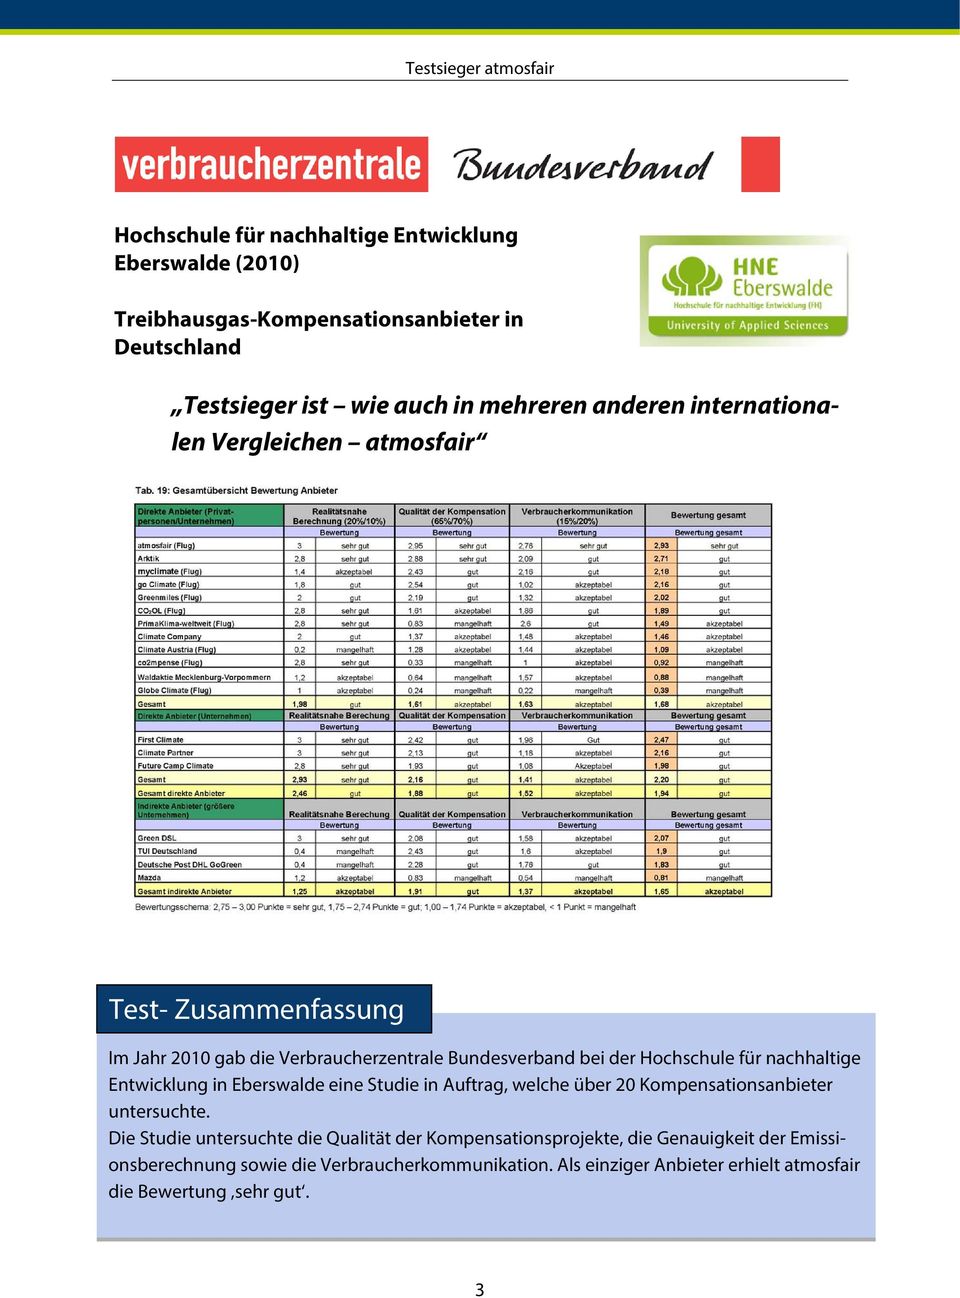 Entwicklung in Eberswalde eine Studie in Auftrag, welche über 20 Kompensationsanbieter untersuchte.